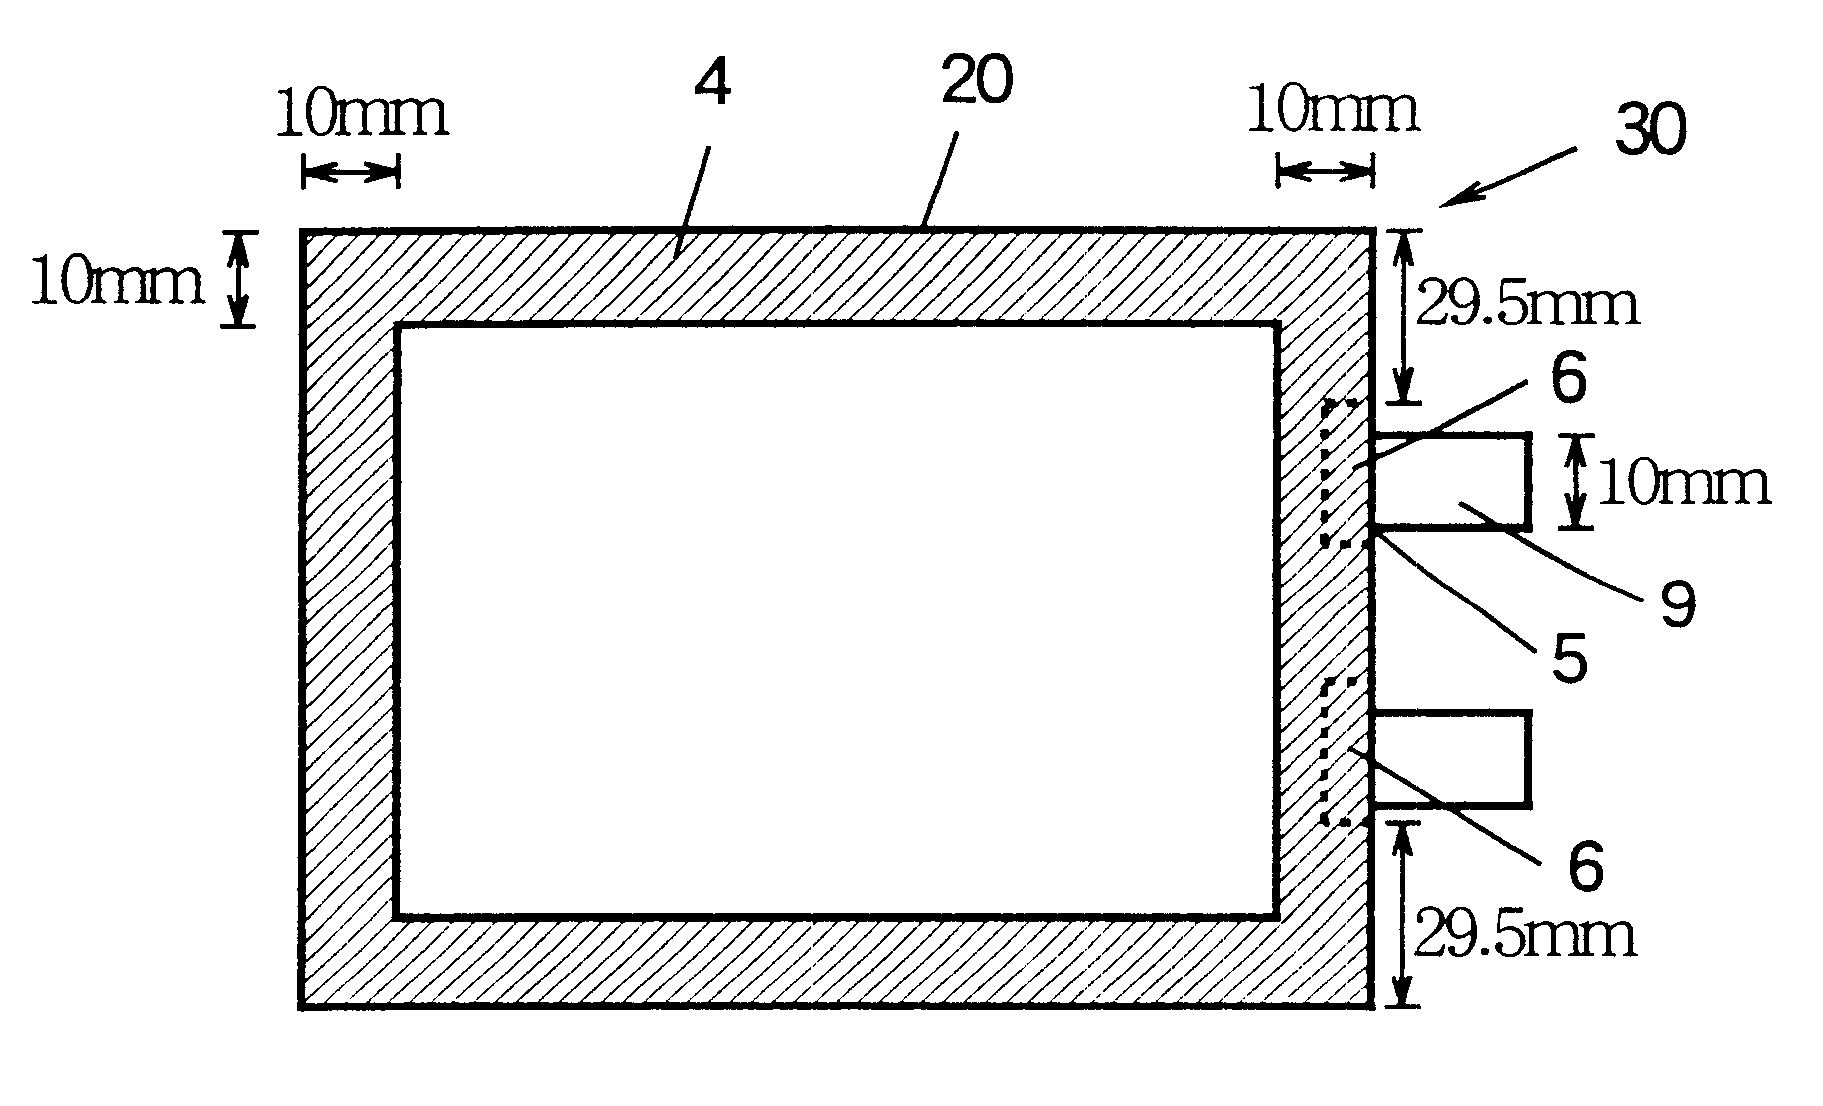 Non-aqueous battery of a thin configuration